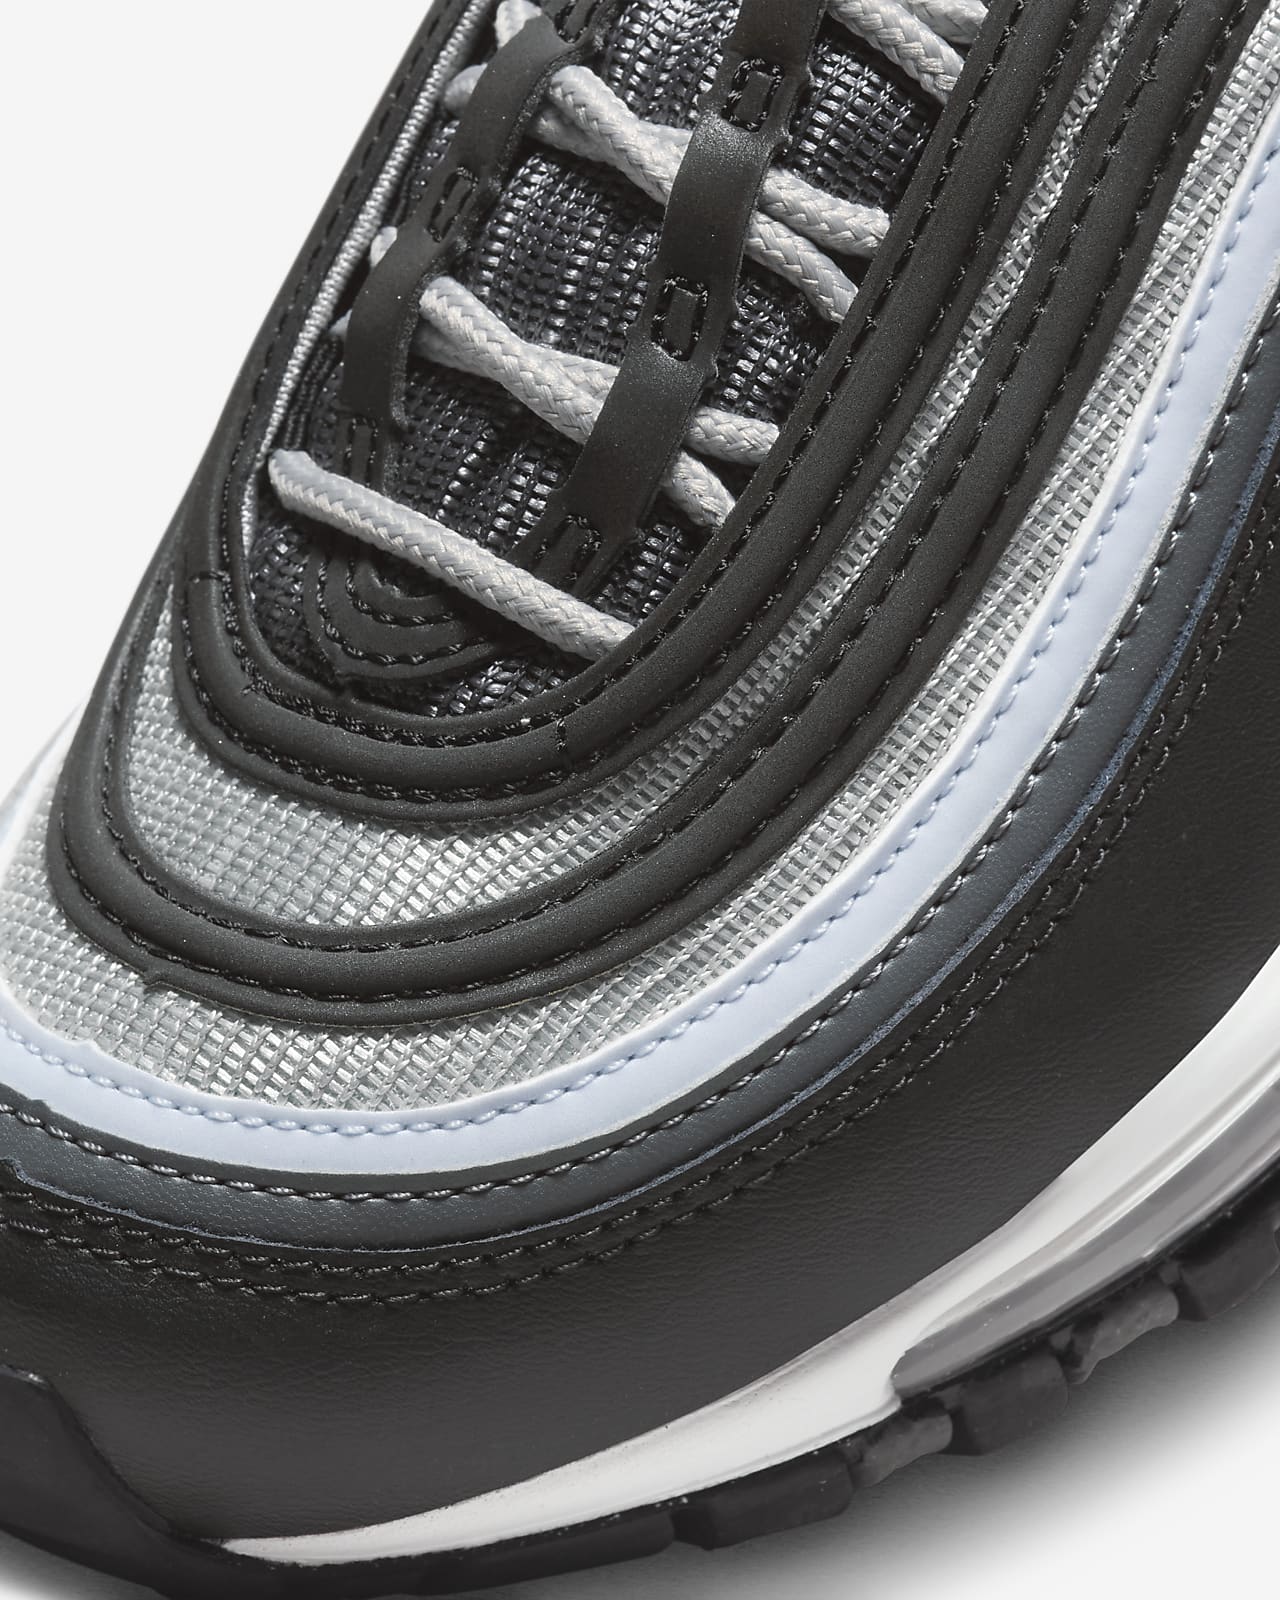 Nike Air Max 97-sko større Nike DK